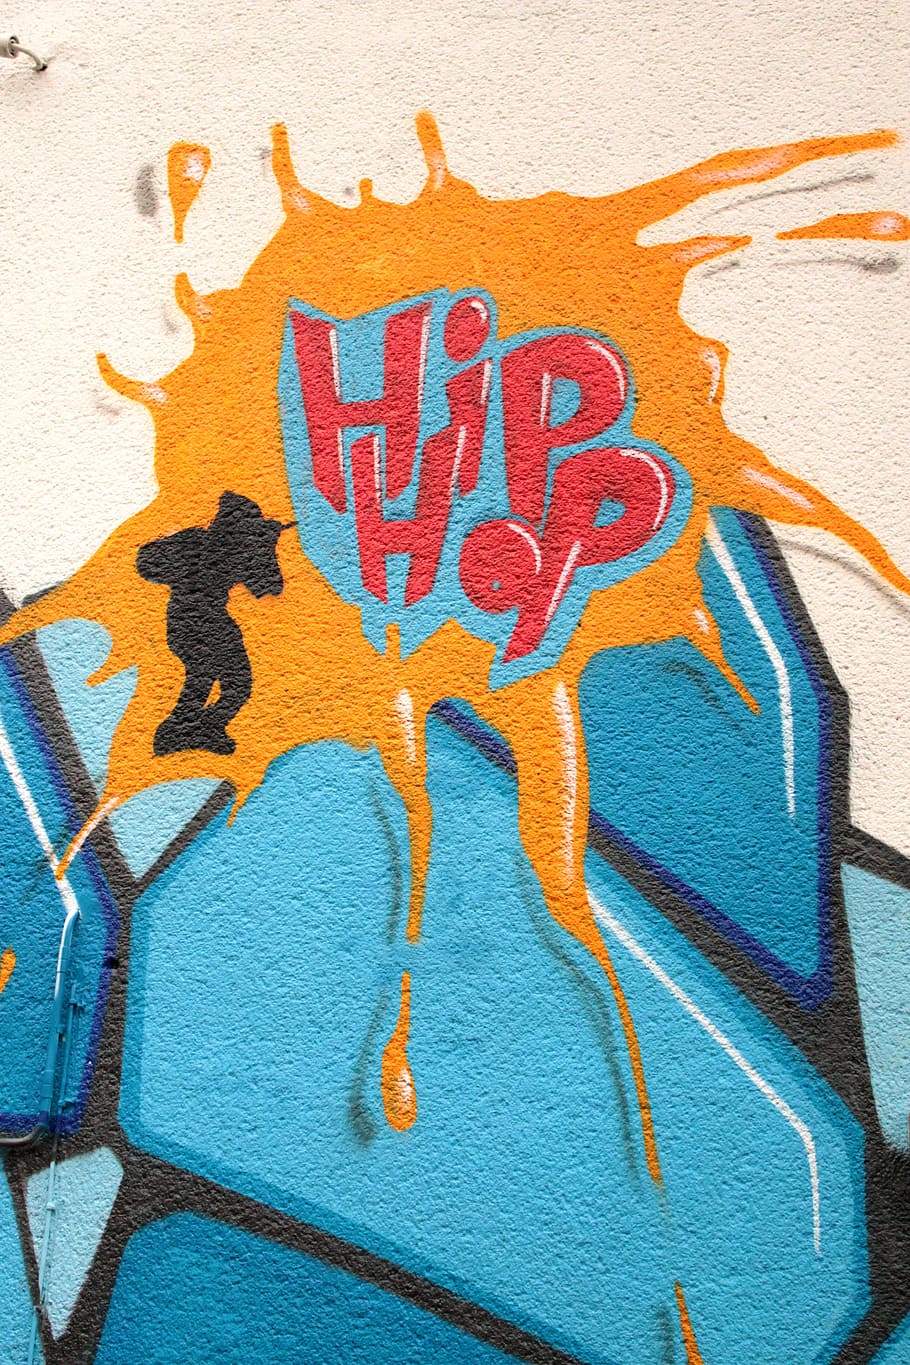 ilustrasi hip hop, grafiti, hiphop, hip hop, hauswand, dinding, rumah, bangunan, penglihatan, warna